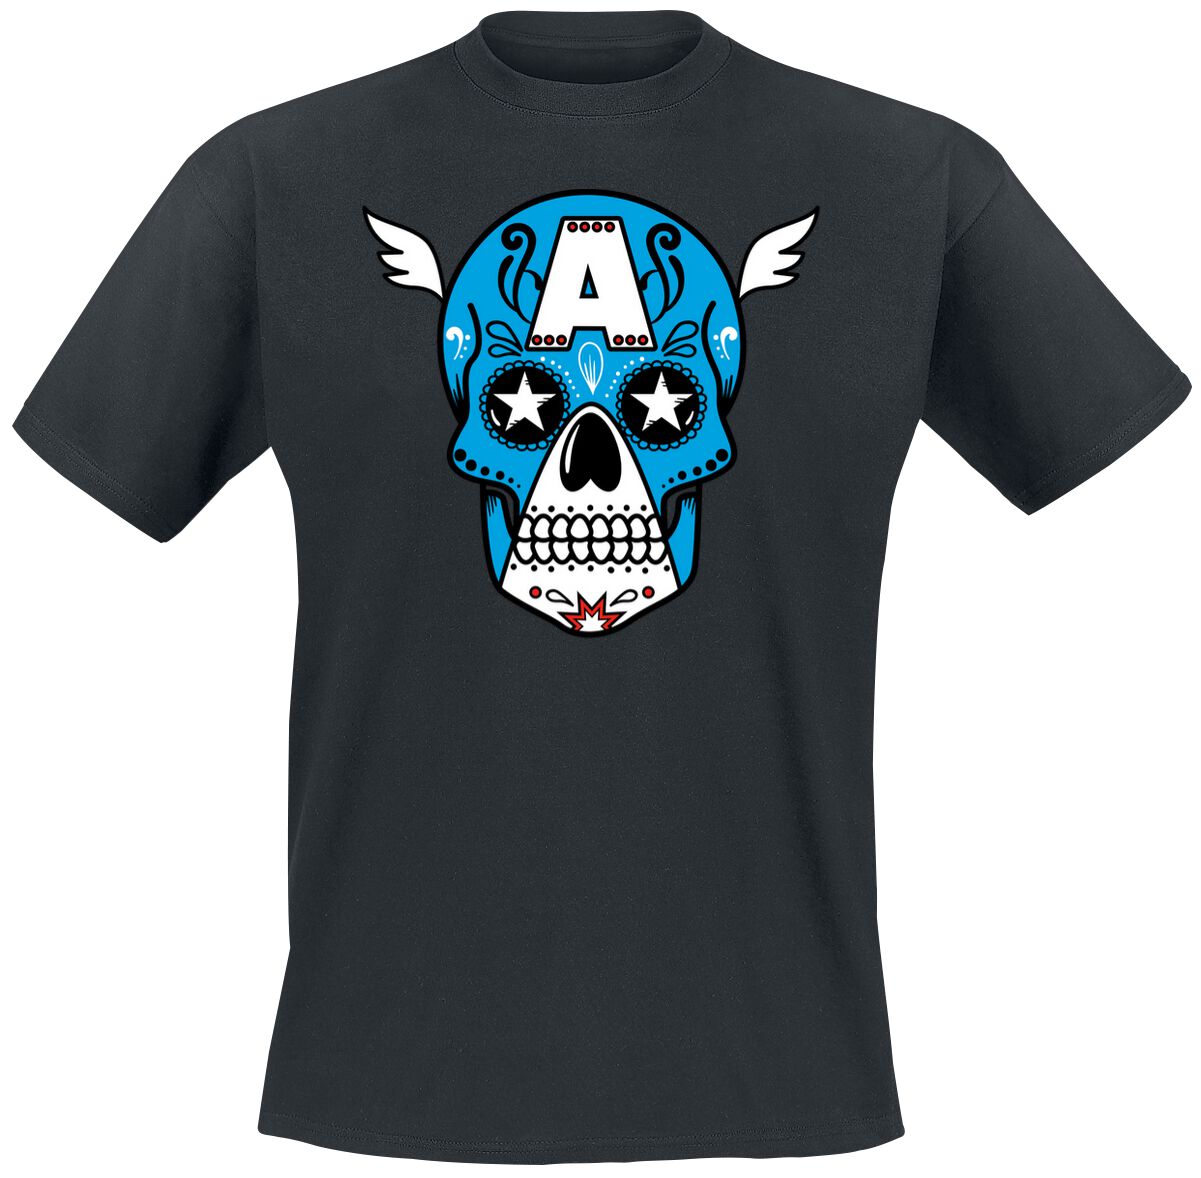 Captain America Sugar skull T-Shirt black